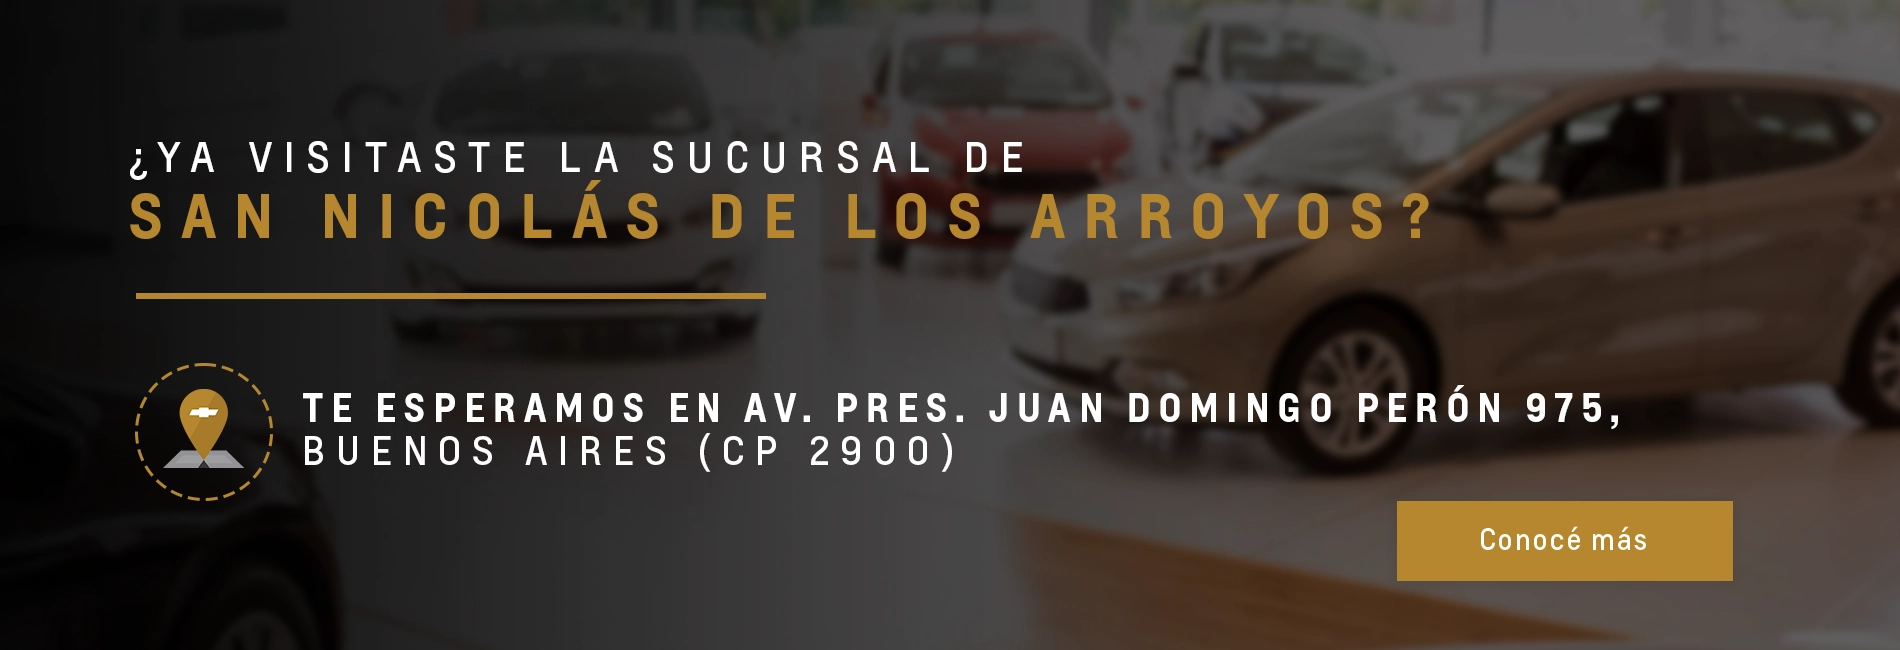 ¿Ya visitaste la sucursal de San Nicolas de los Arroyos? | Chevrolet Forte car